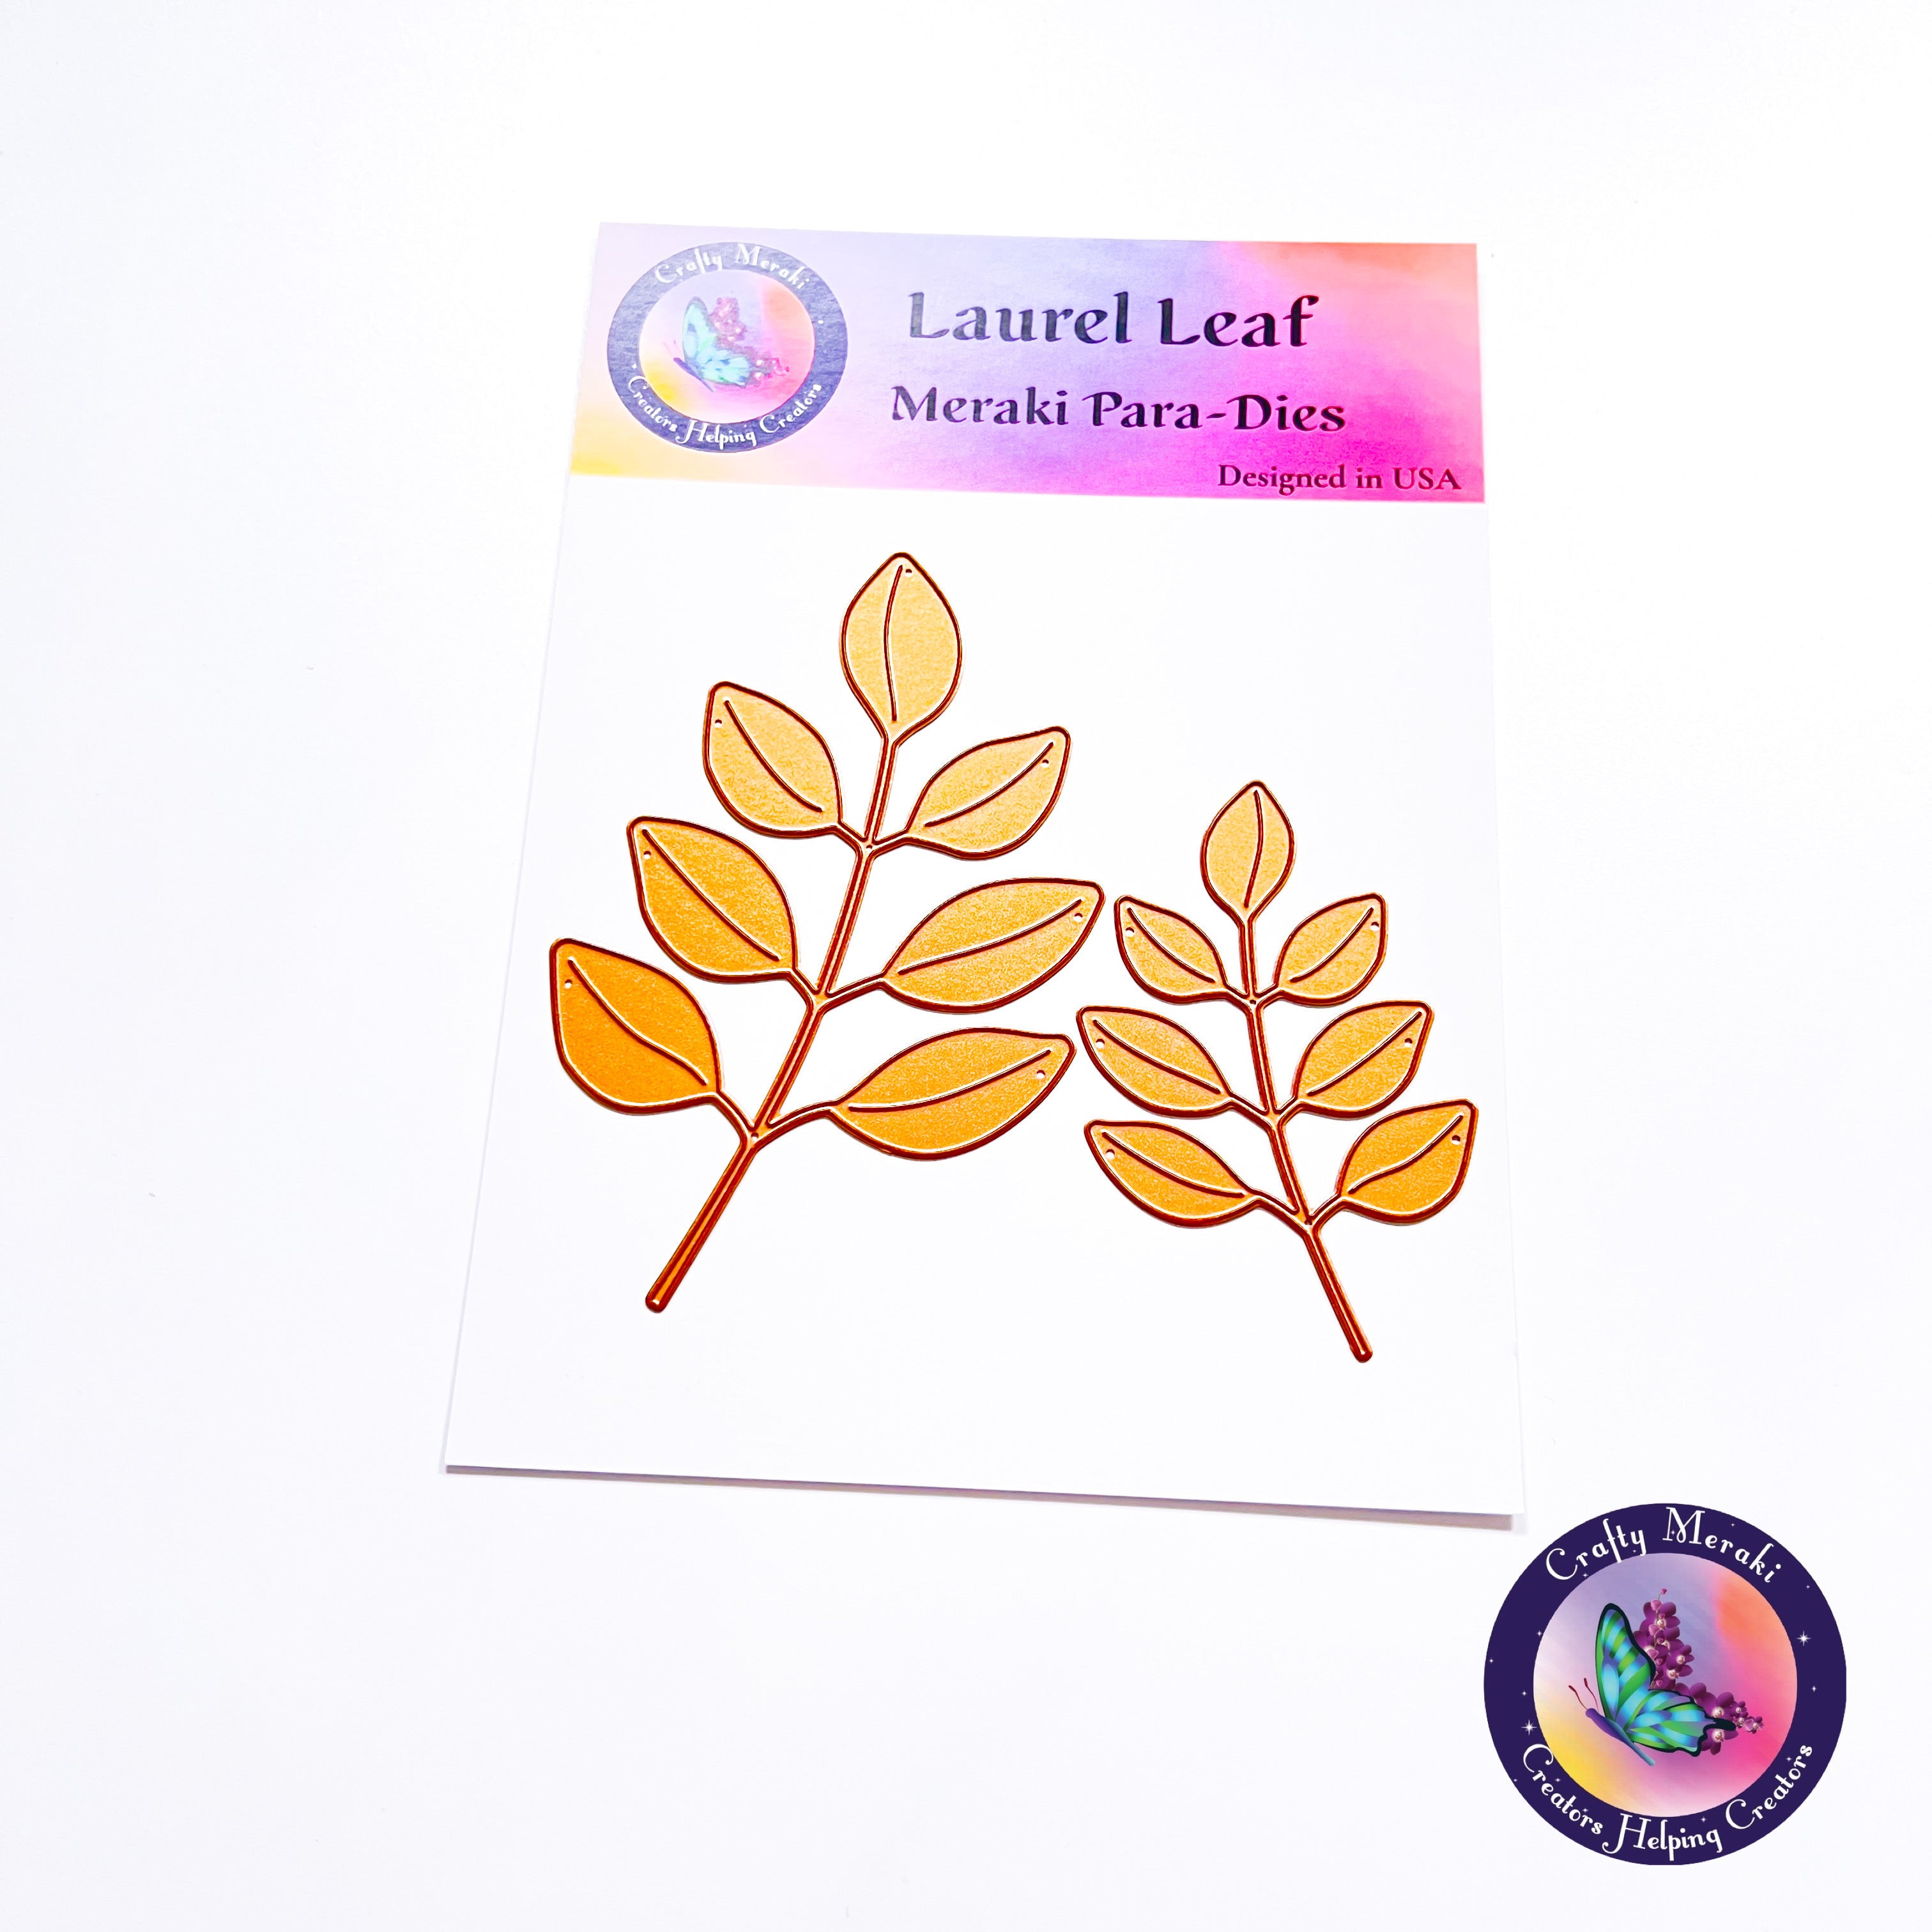 Laurel Leaf Meraki Para-Dies - Crafty Meraki